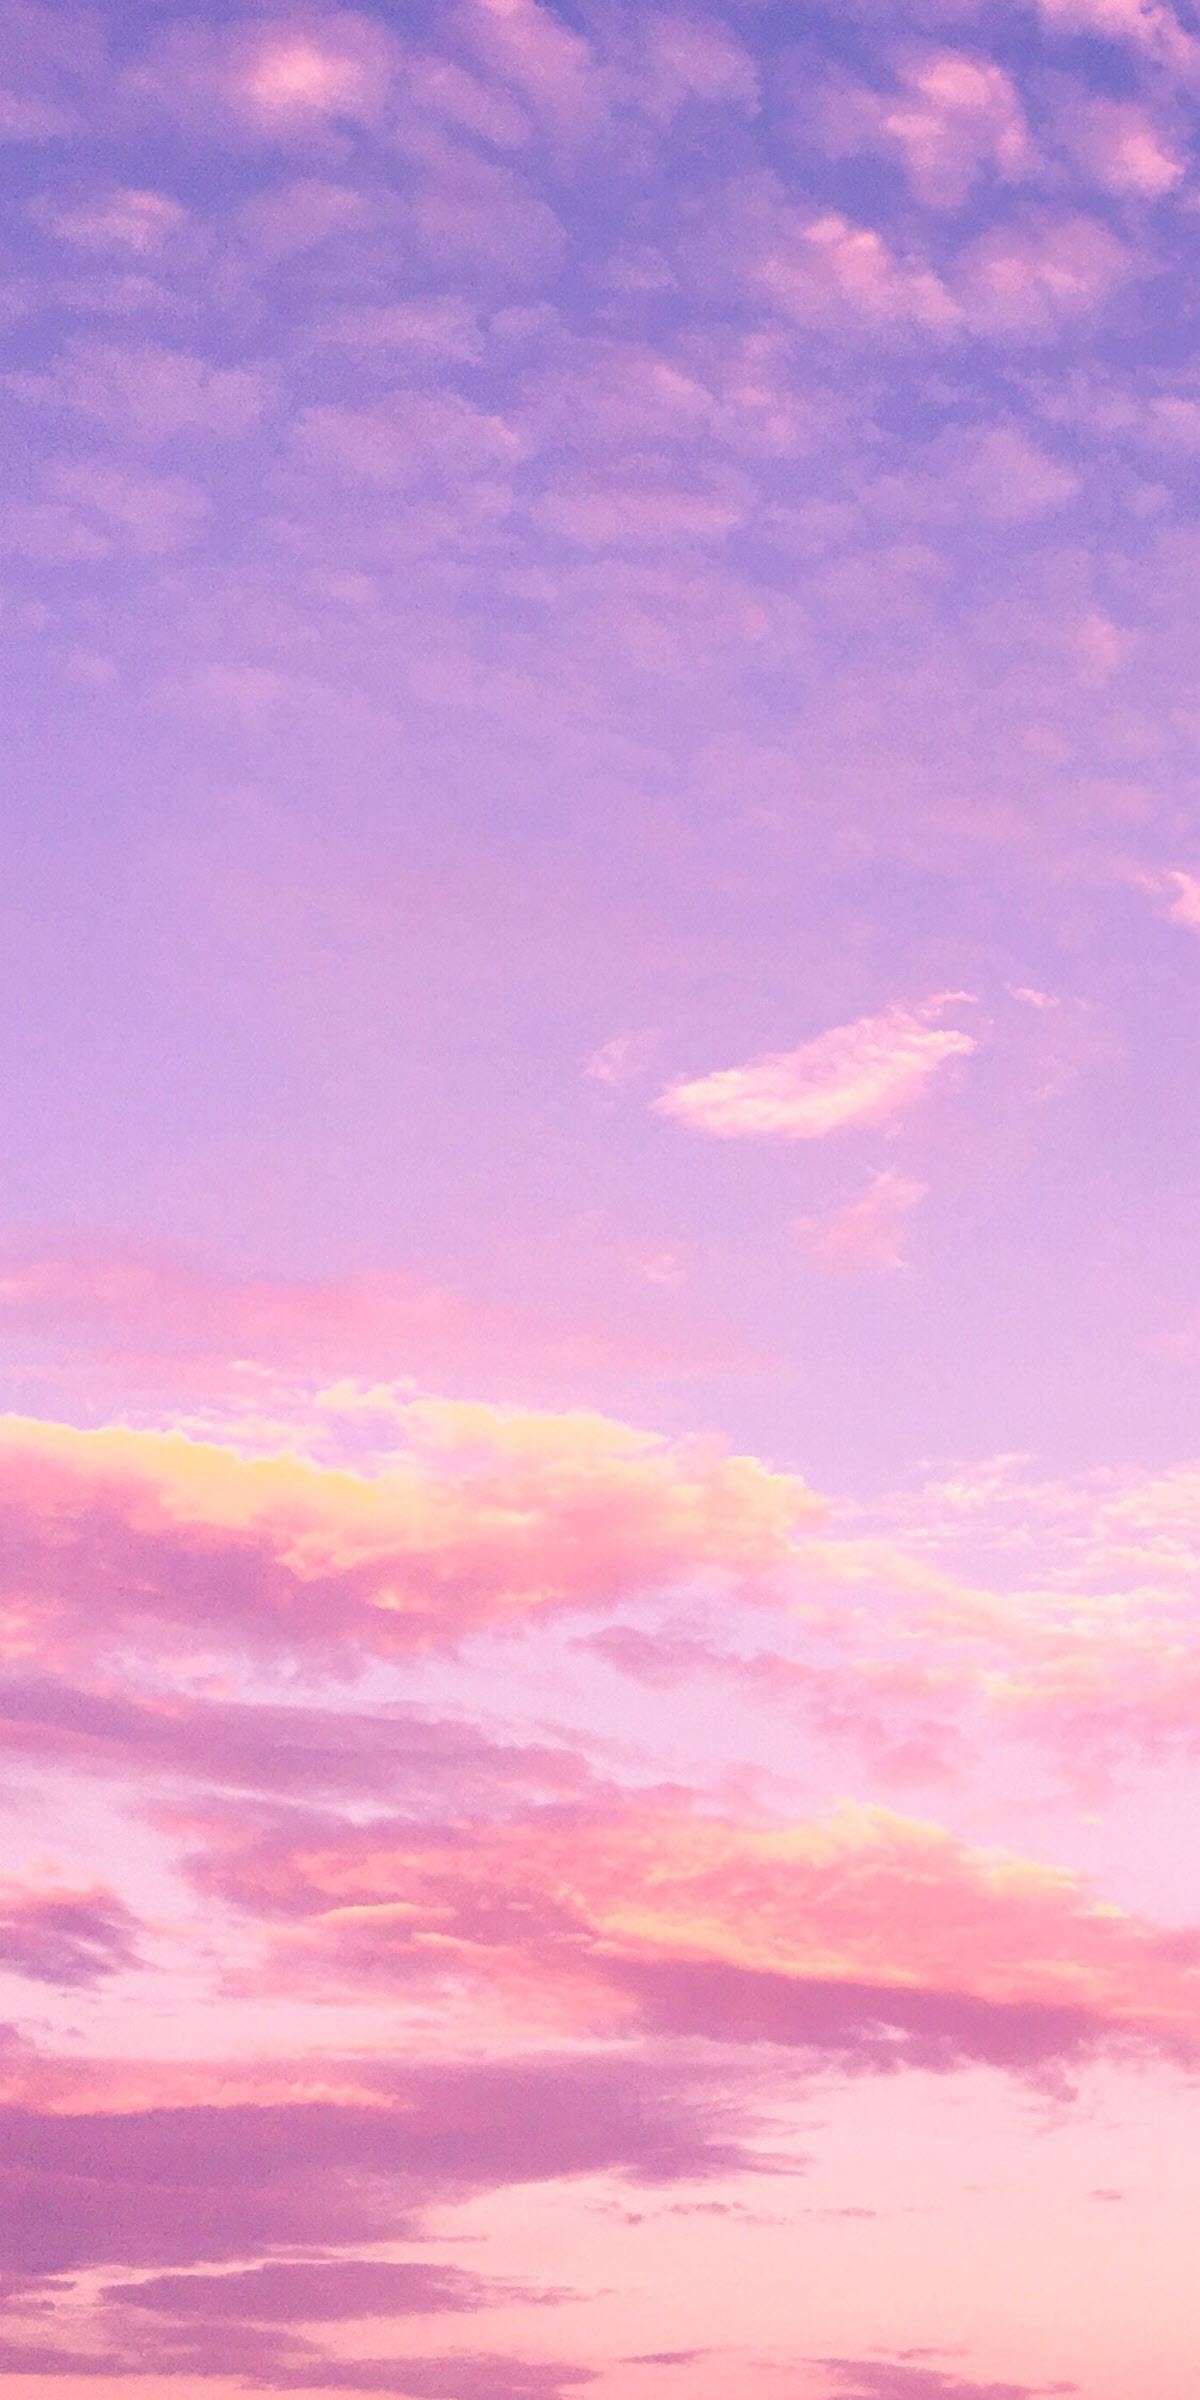 Hãy cùng chiêm ngưỡng ảnh bầu trời màu hồng tím tuyệt đẹp đầy mê hoặc, những màu sắc ấn tượng sẽ đưa ta đến những giấc mơ đẹp nhất.